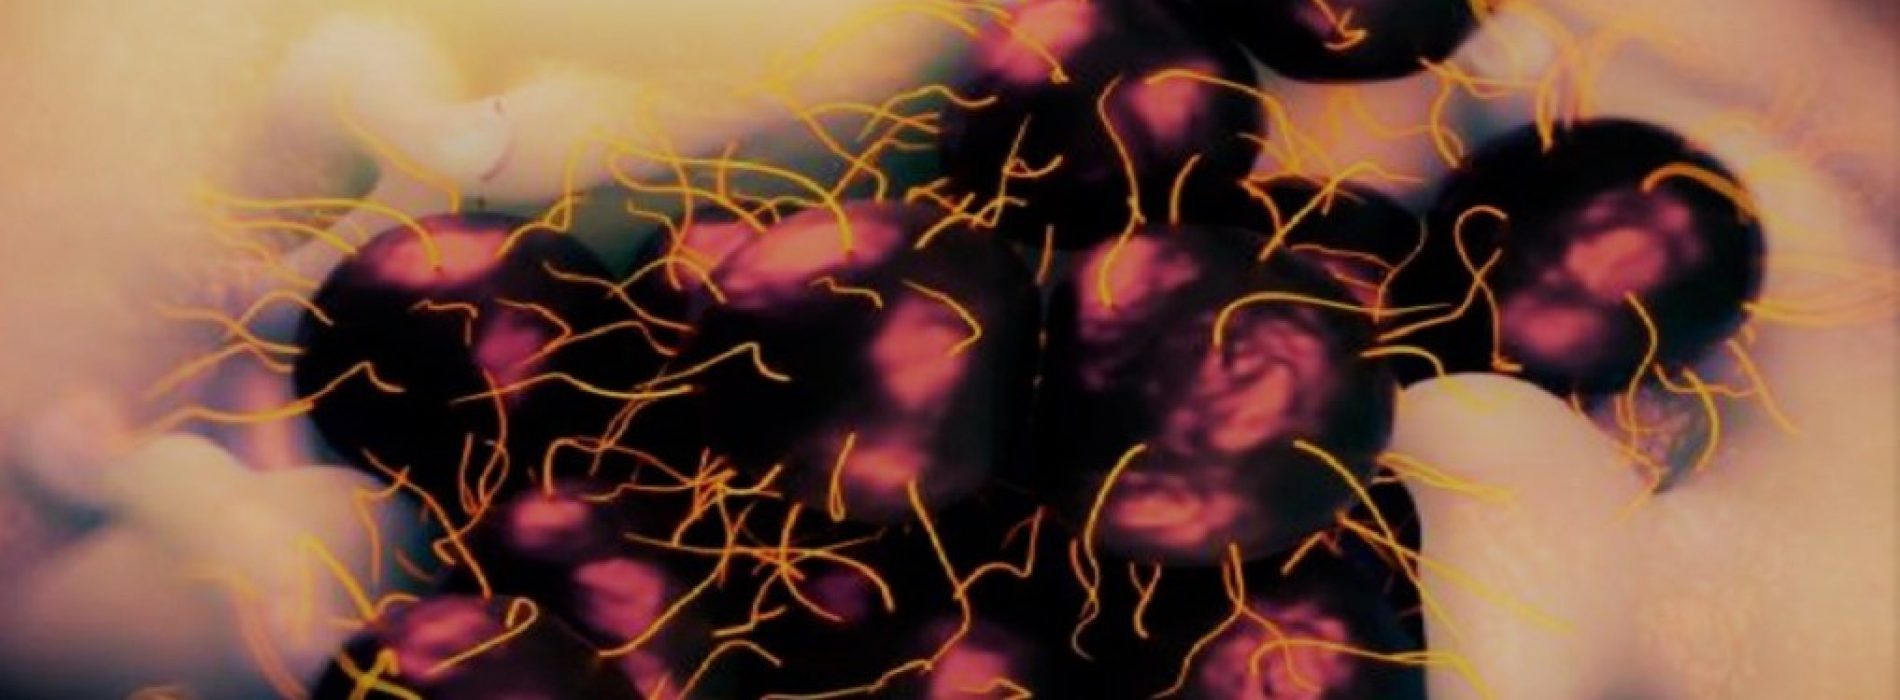 Gonorrea: Advierten por la nueva cepa de ETS imposible de curar